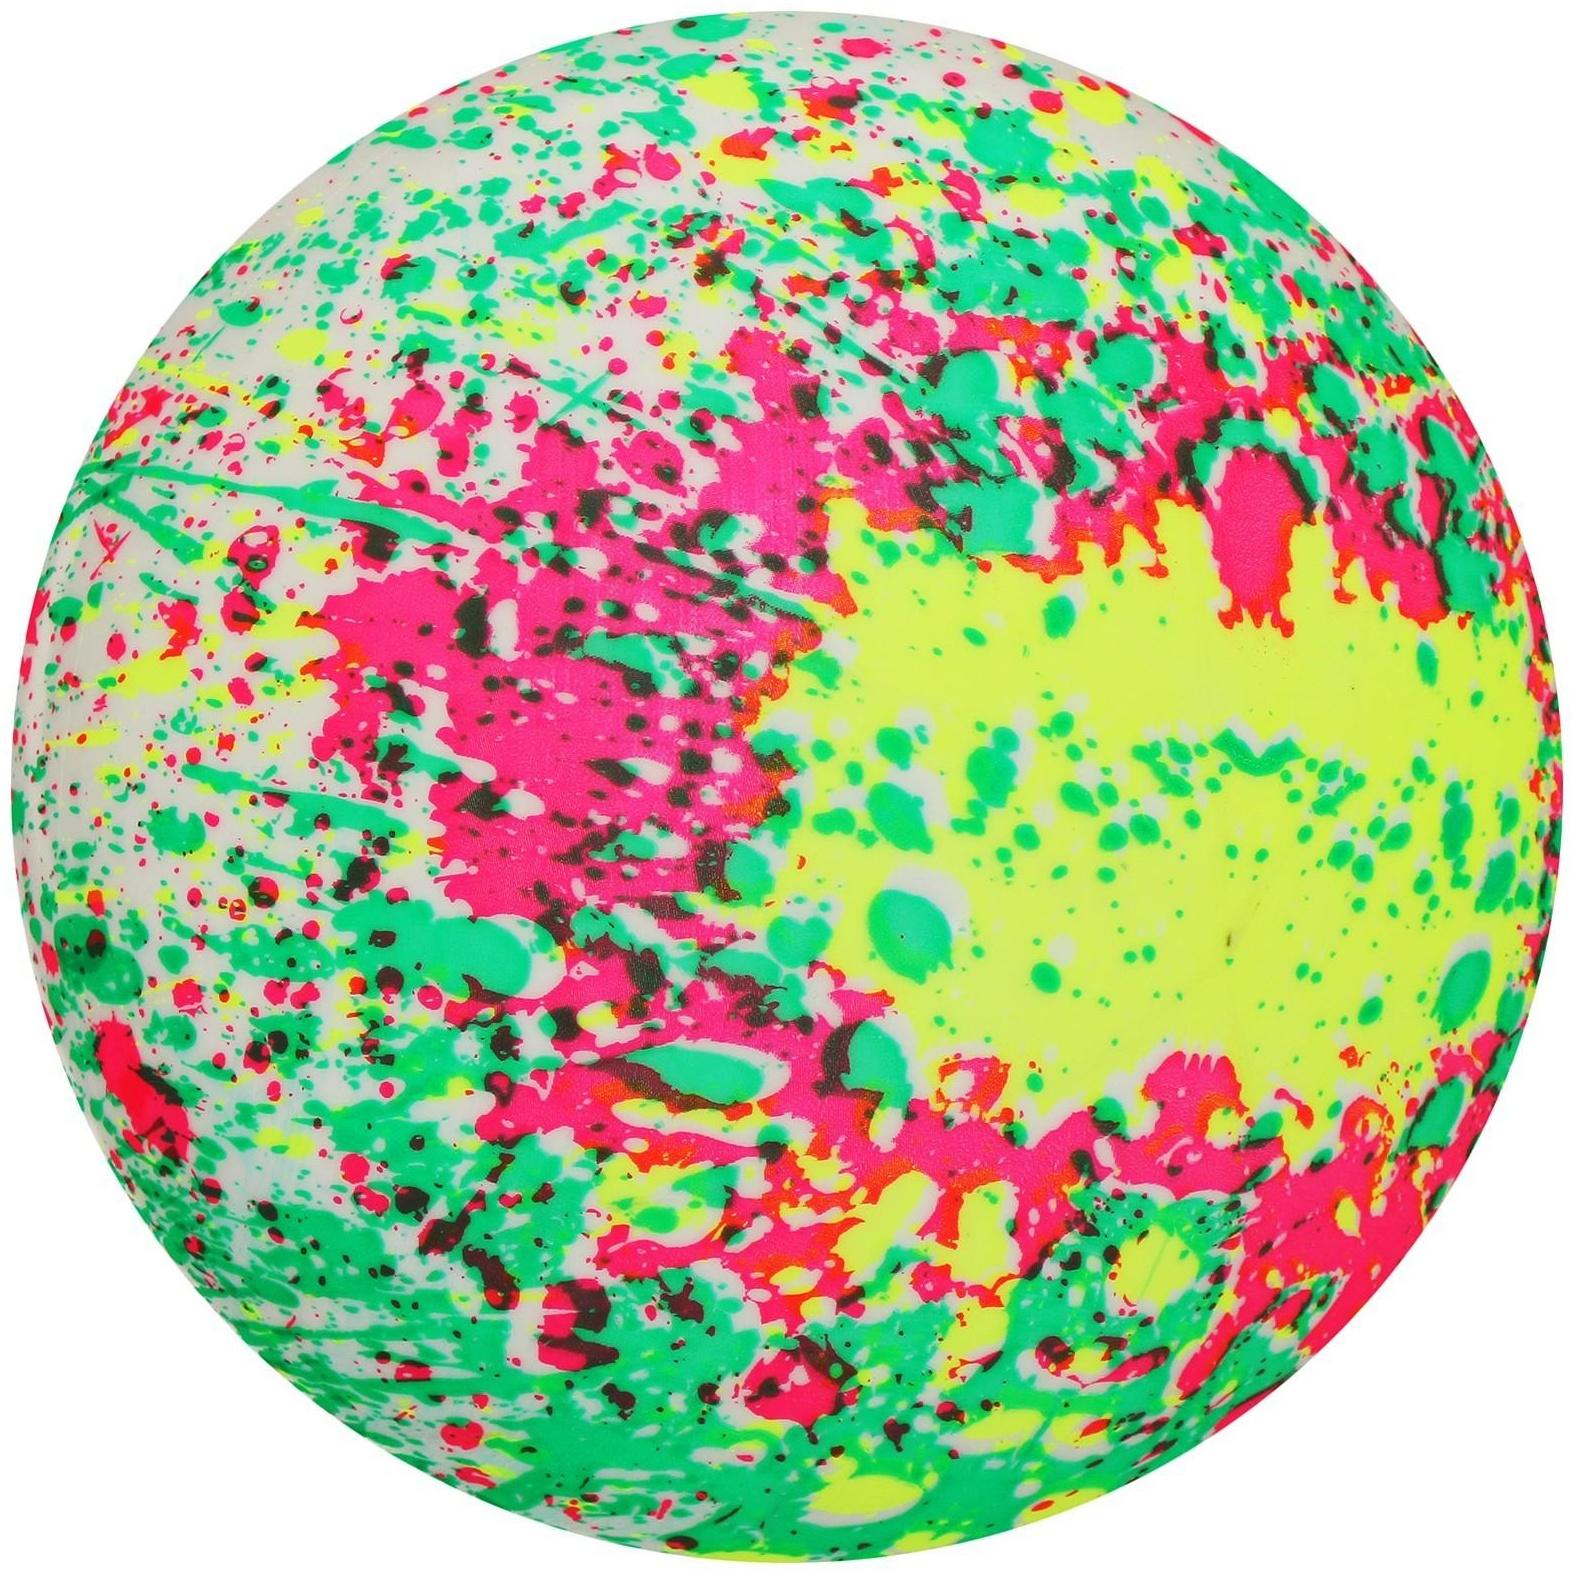 Мяч детский «Фигурки», d=22 см, 60 г, цвета МИКС